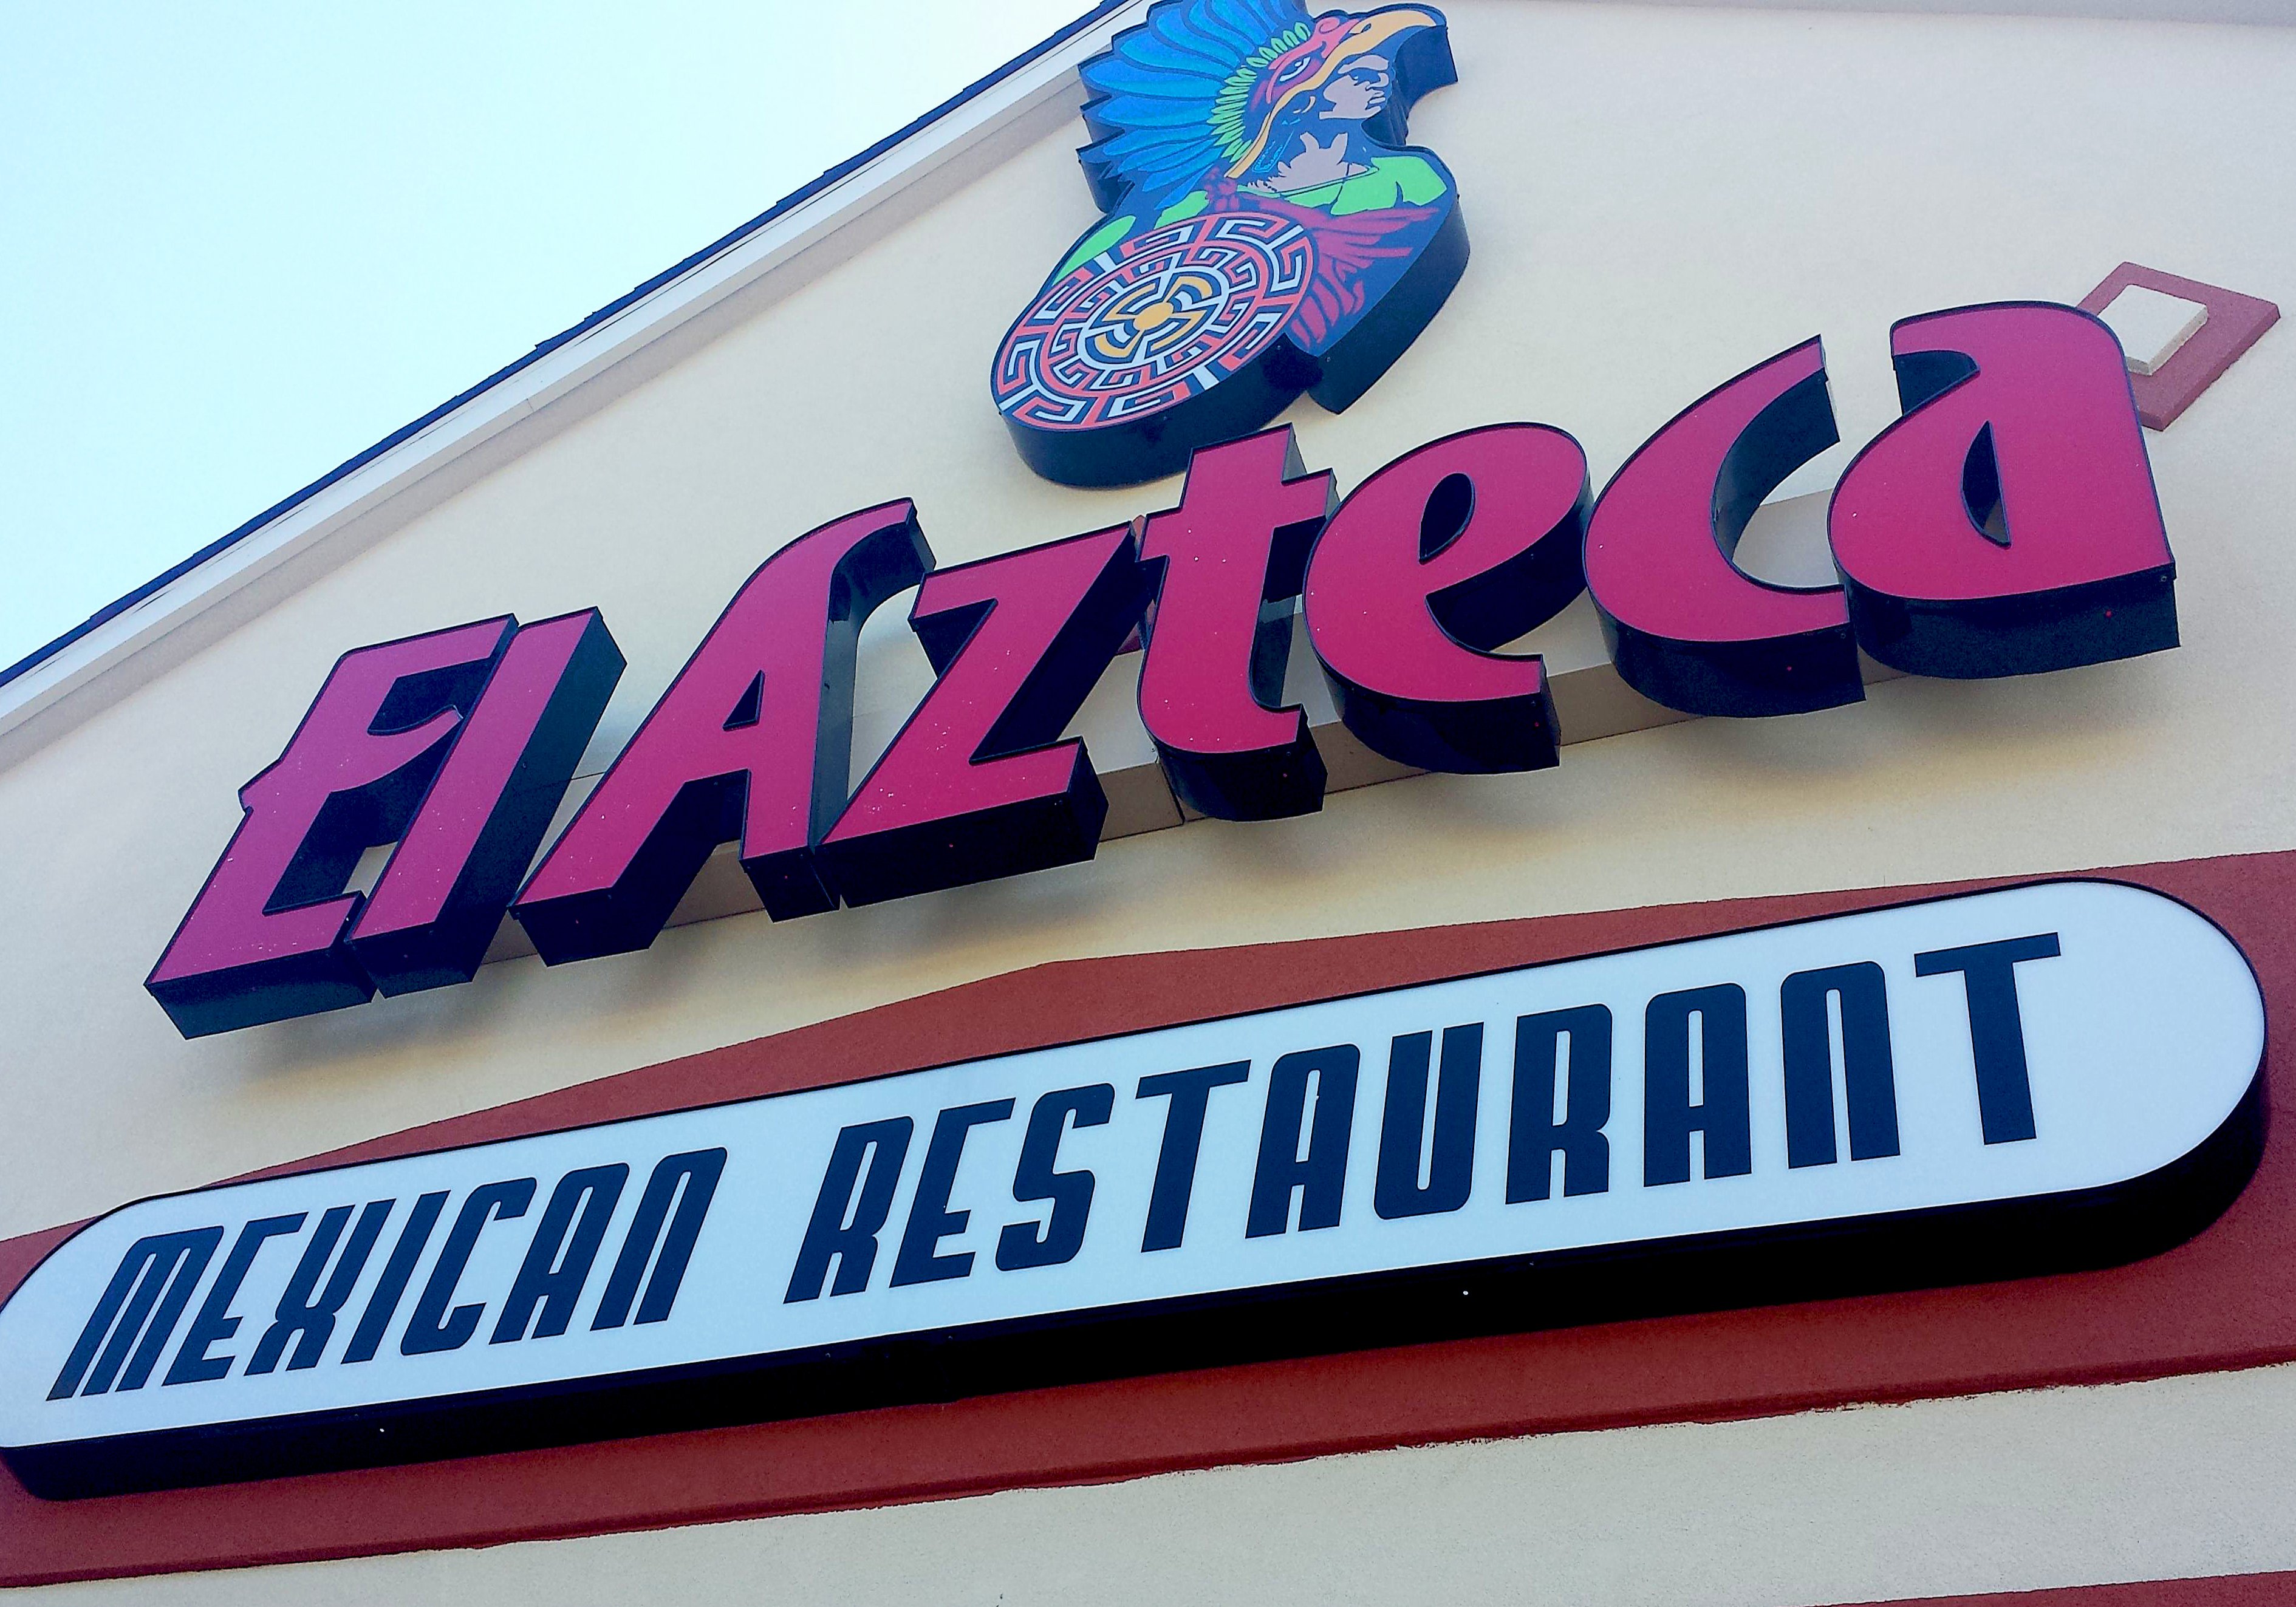 El Azteca Open | Restaurant Reviews Rehoboth Beach DE Area